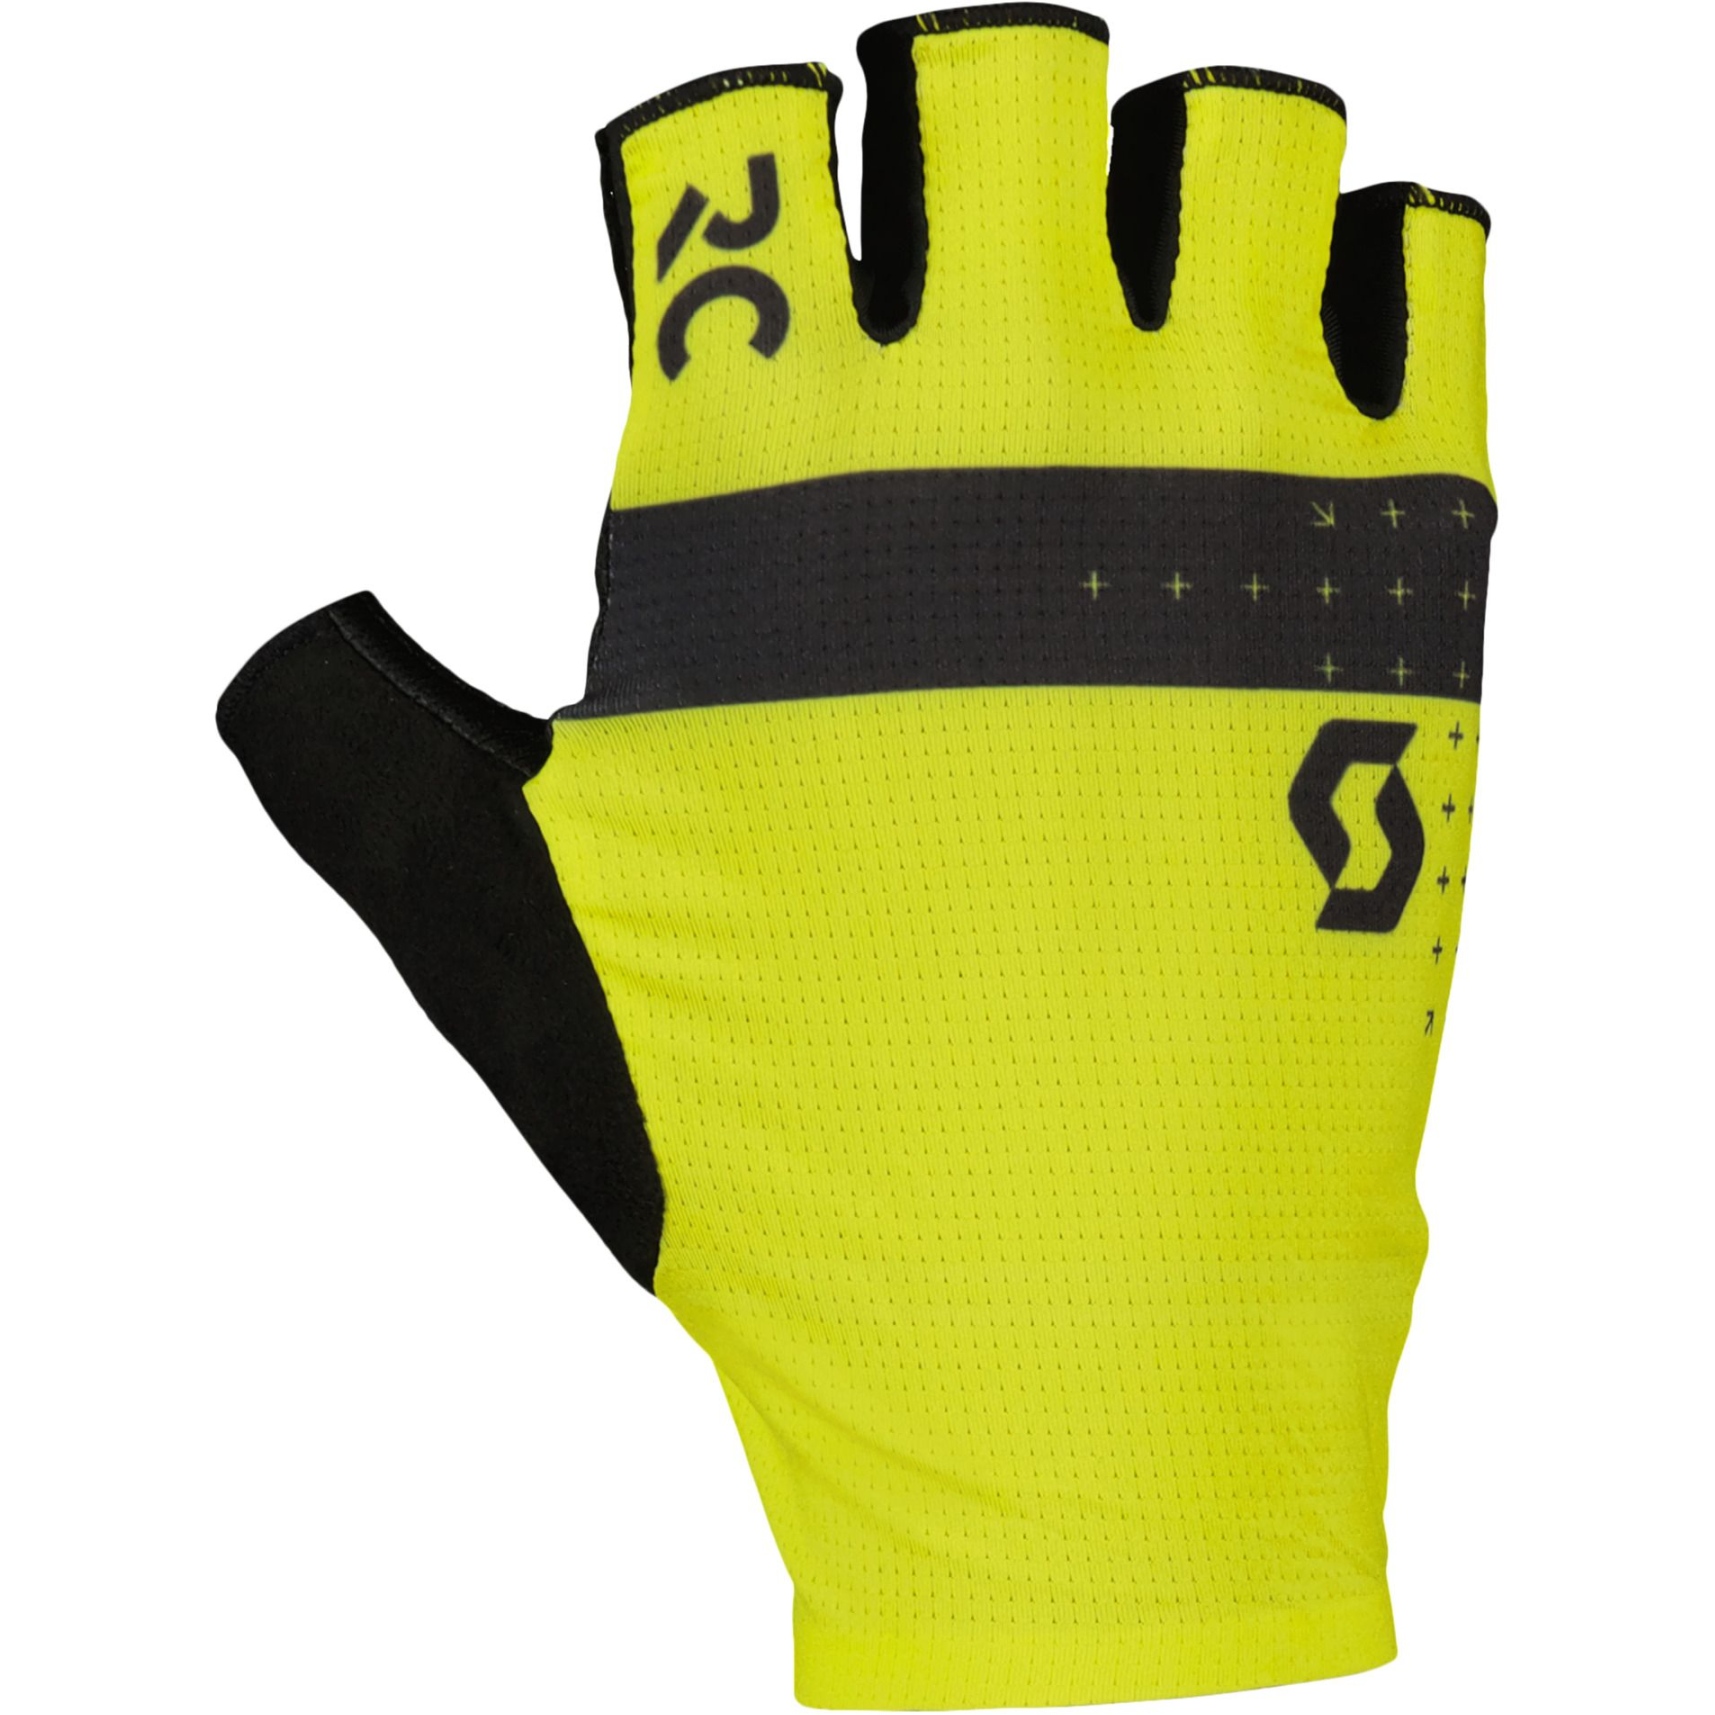 Produktbild von SCOTT RC Pro SF Handschuhe - sulphur yellow/black